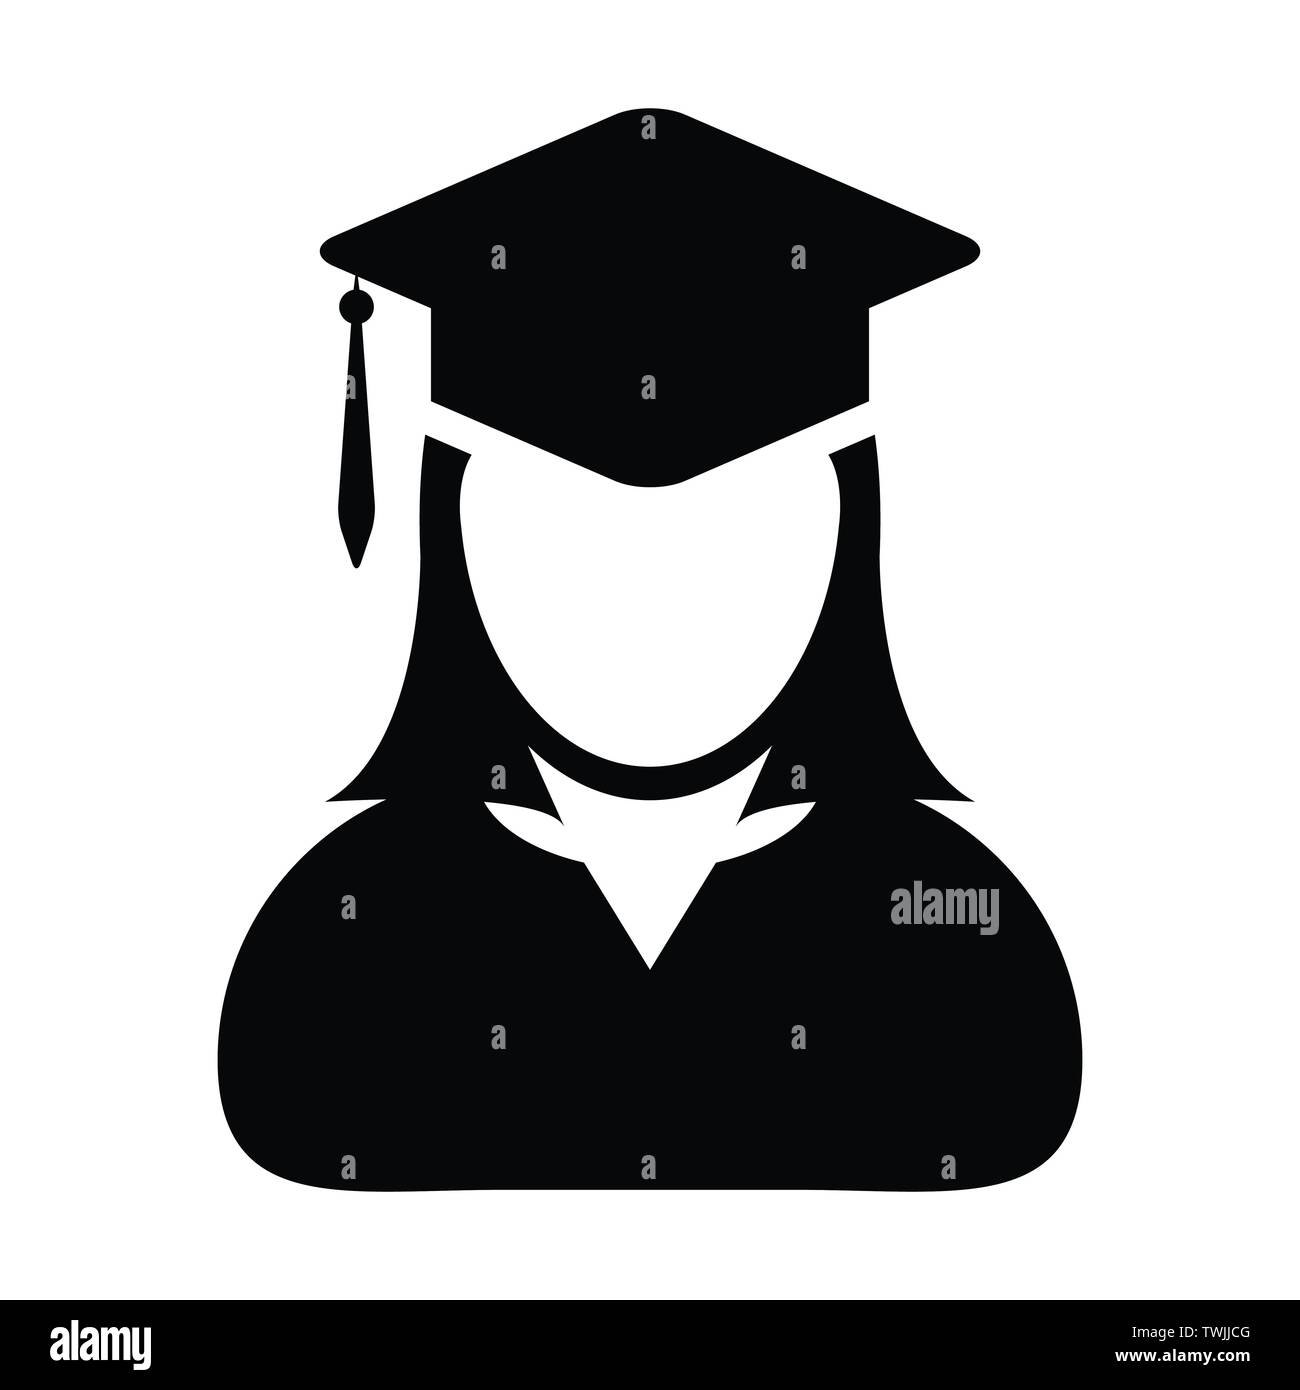 Student Symbol Vektor weibliche Person Profil Avatar mit Mörtel Board hat Symbol für Schule, Hochschule und Universität Abschluss Grad in der flachen Farbe glyphe Stock Vektor